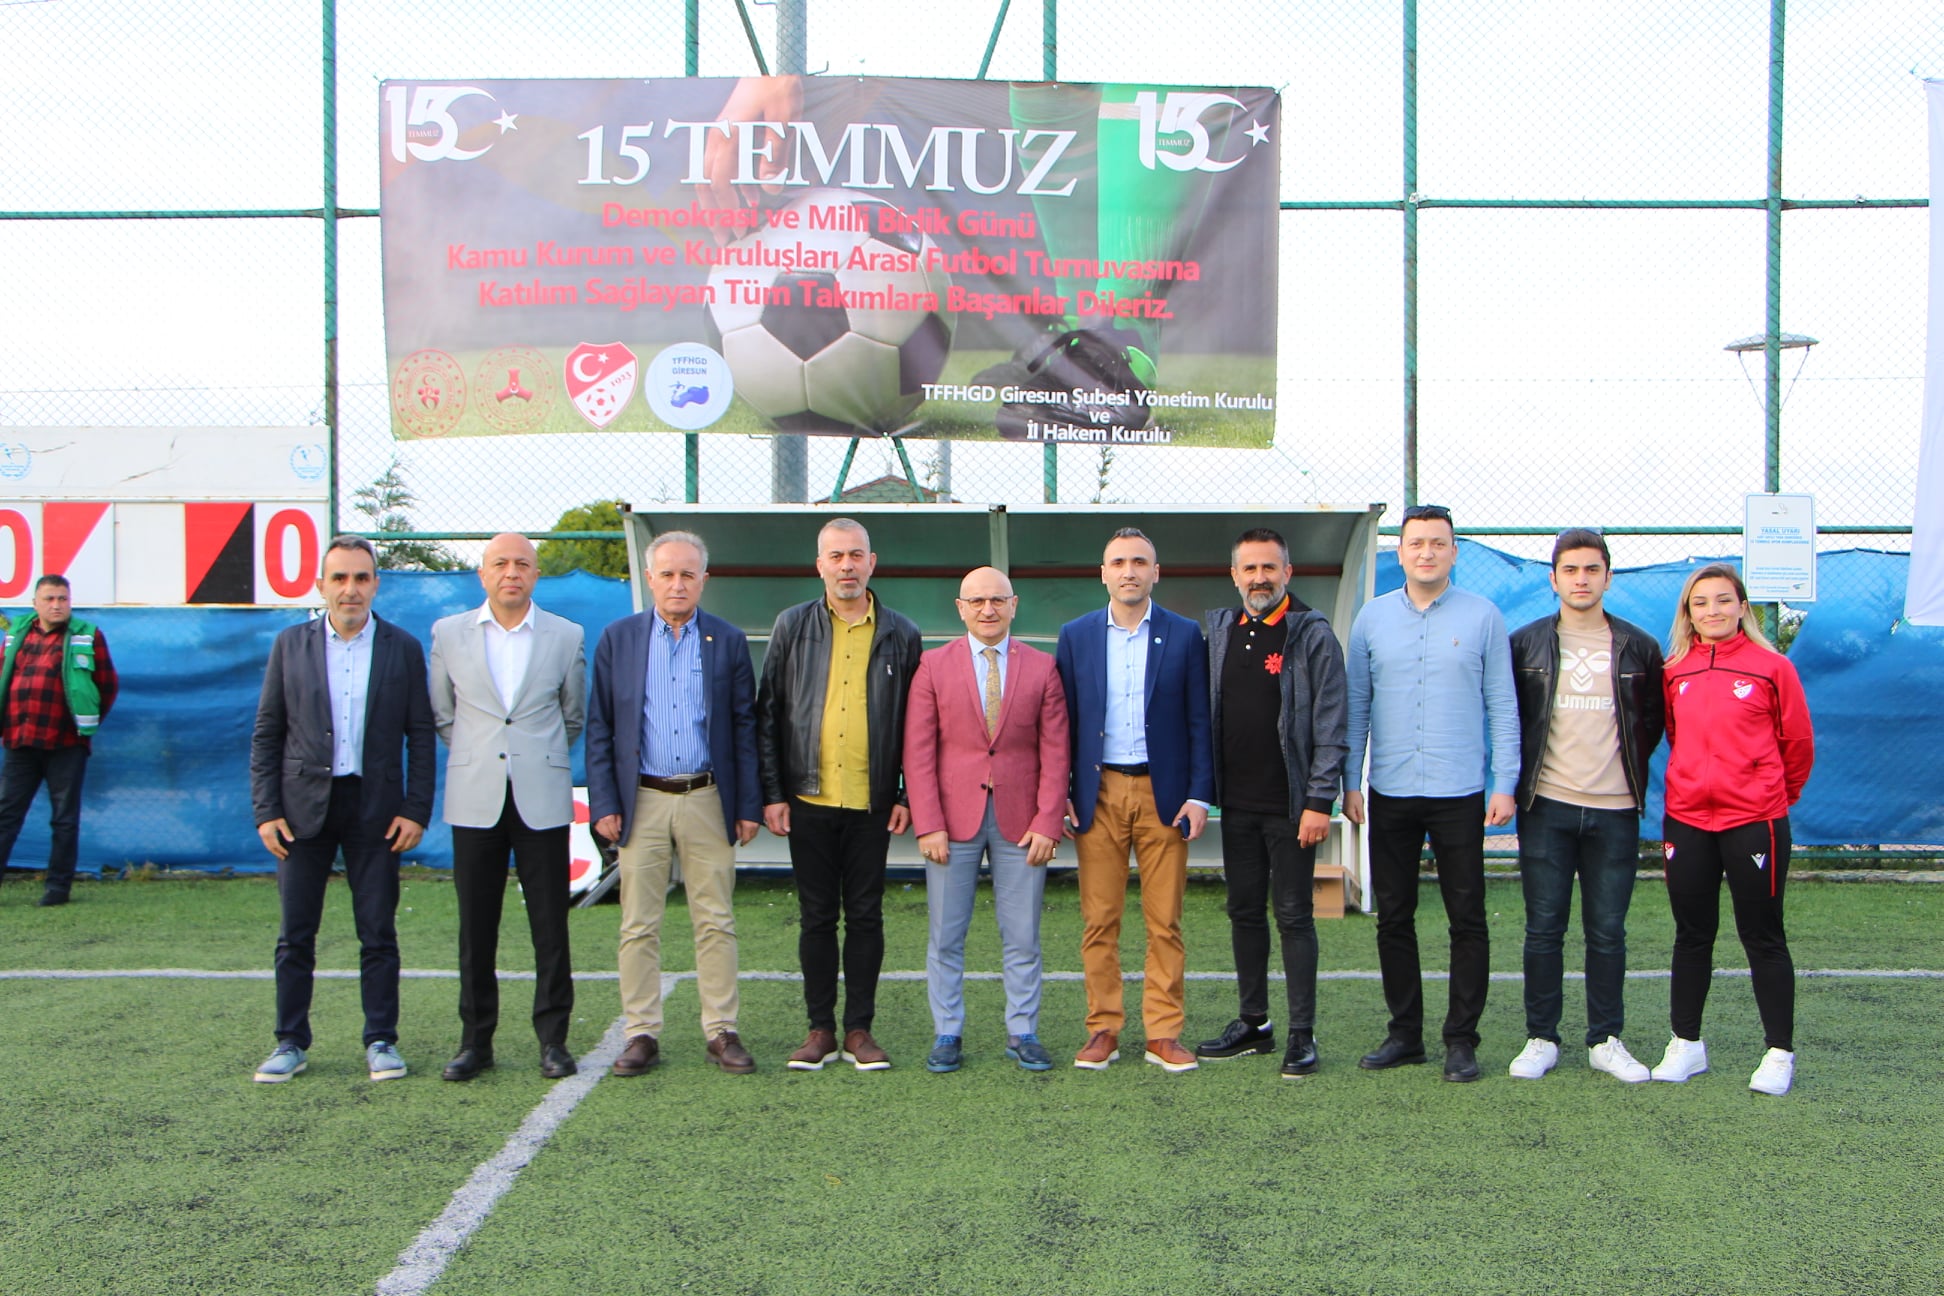 Kamu Kurum ve Kuruluşlar Arası Futbol Turnuvası Başladı